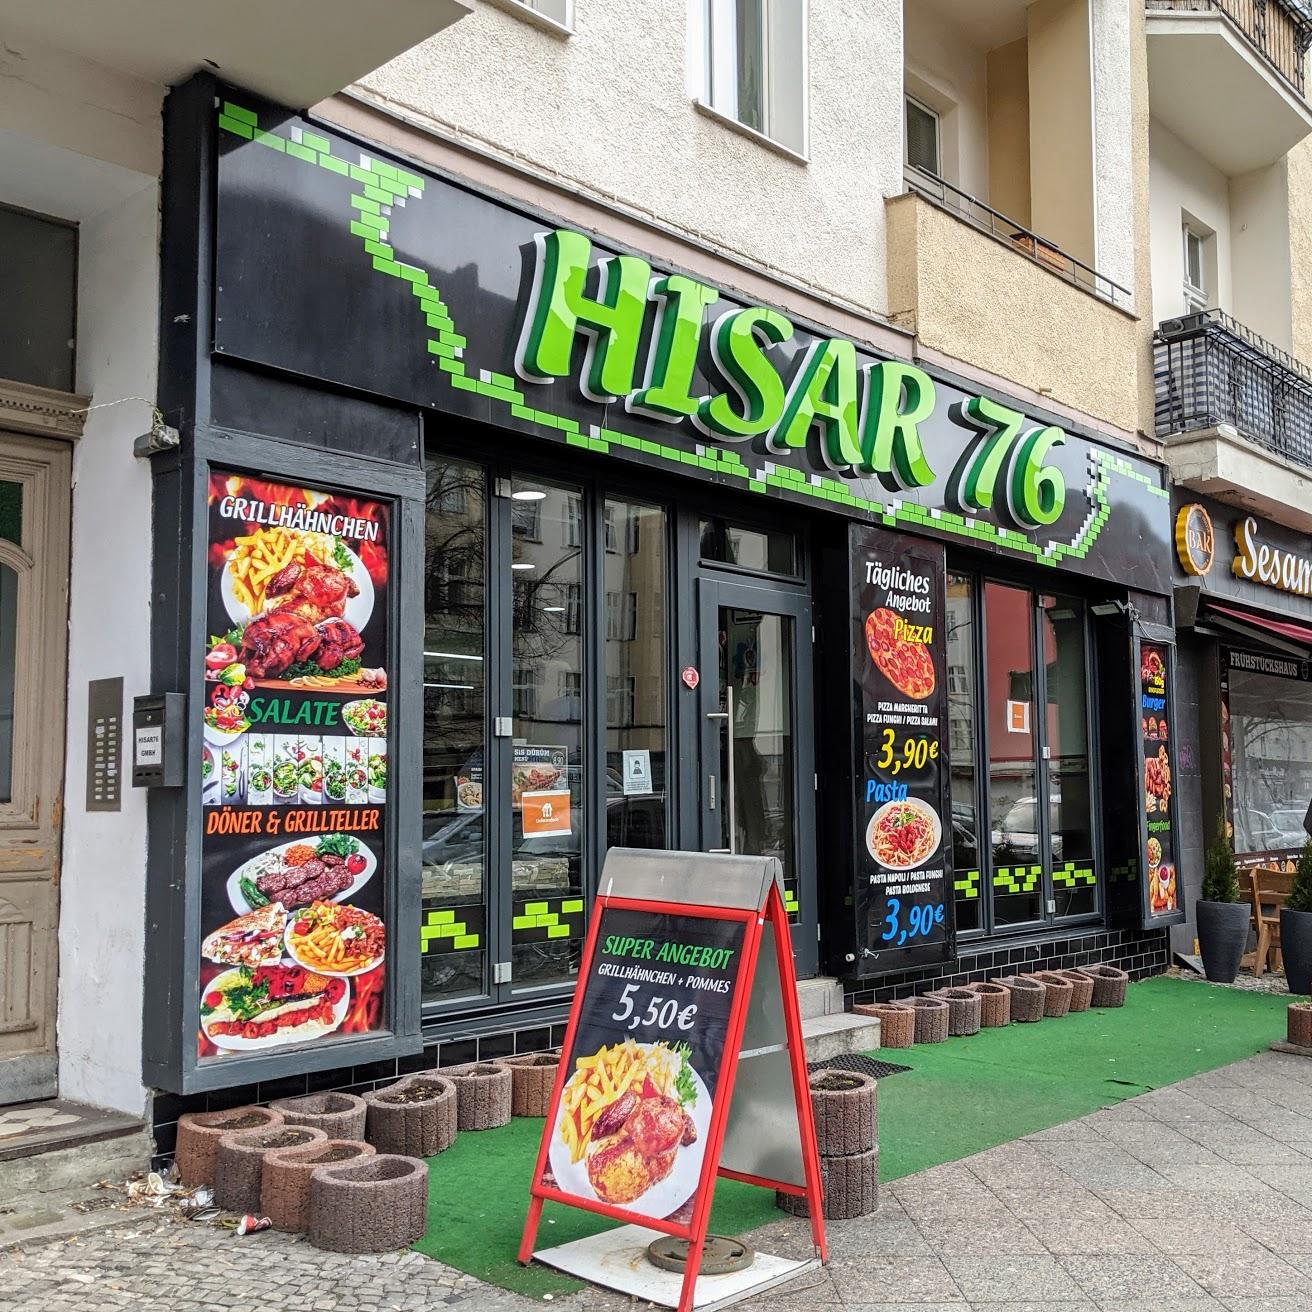 Restaurant "Hisar 76" in Berlin